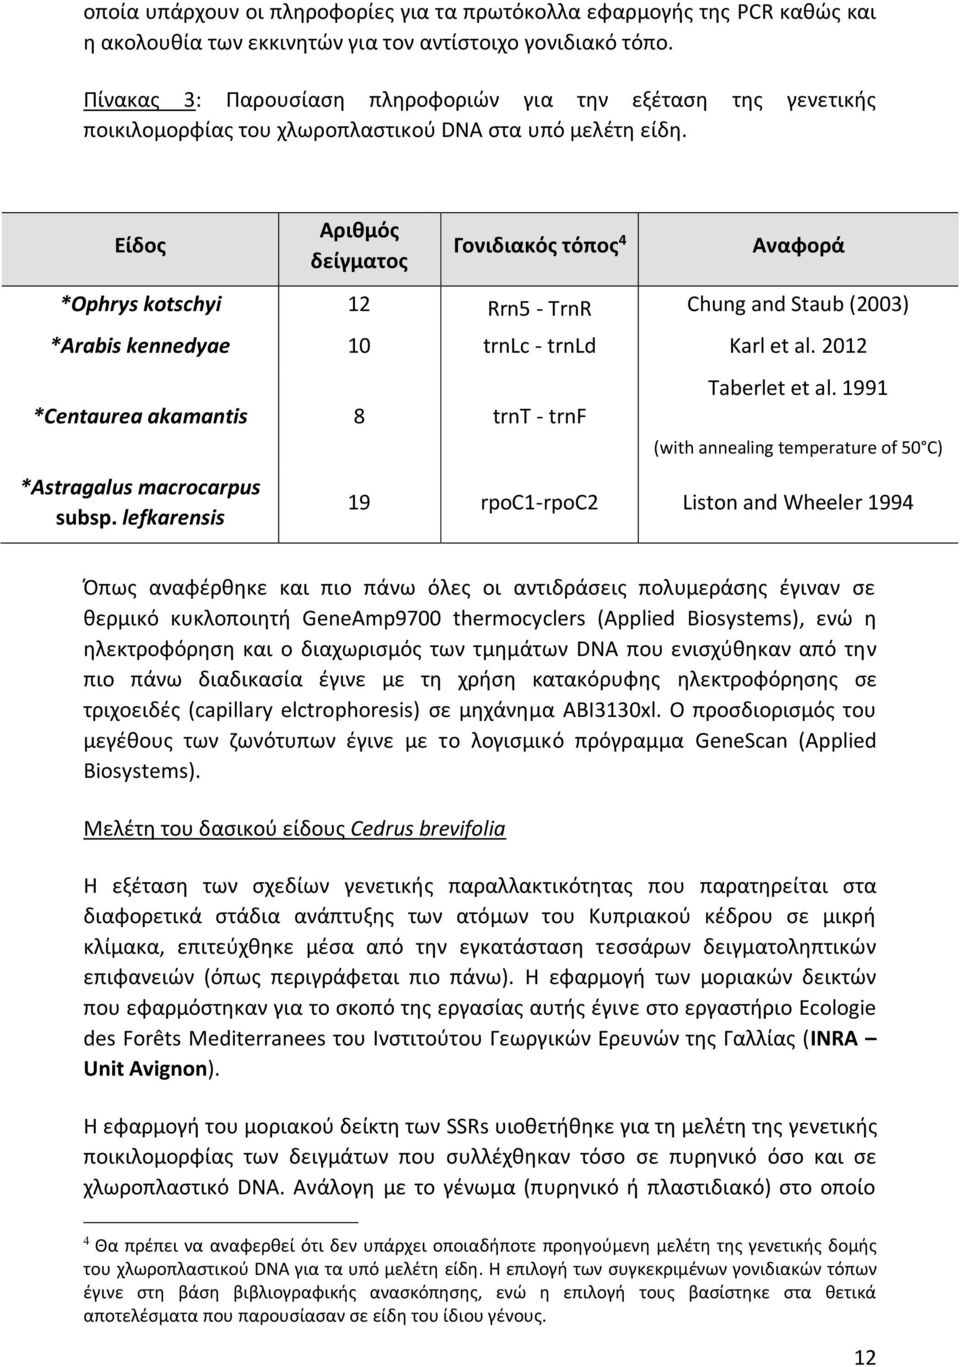 Είδος Αριθμός δείγματος Γονιδιακός τόπος 4 Αναφορά *Ophrys kotschyi 12 Rrn5 - TrnR Chung and Staub (2003) *Arabis kennedyae 10 trnlc - trnld Karl et al.